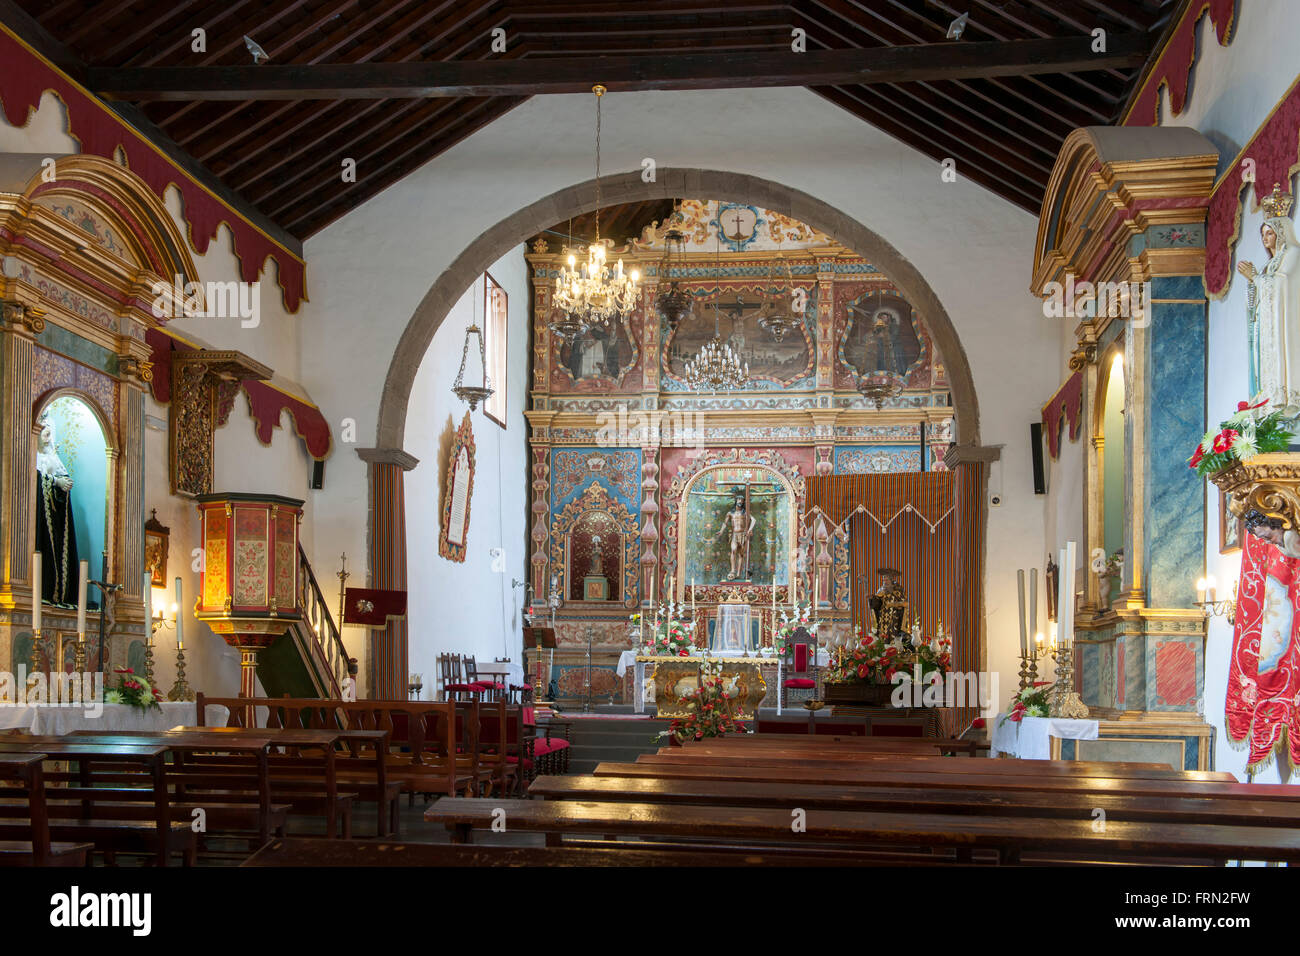 Spanien, Teneriffa, Arona, Iglesia de San Antonio Abad Foto Stock